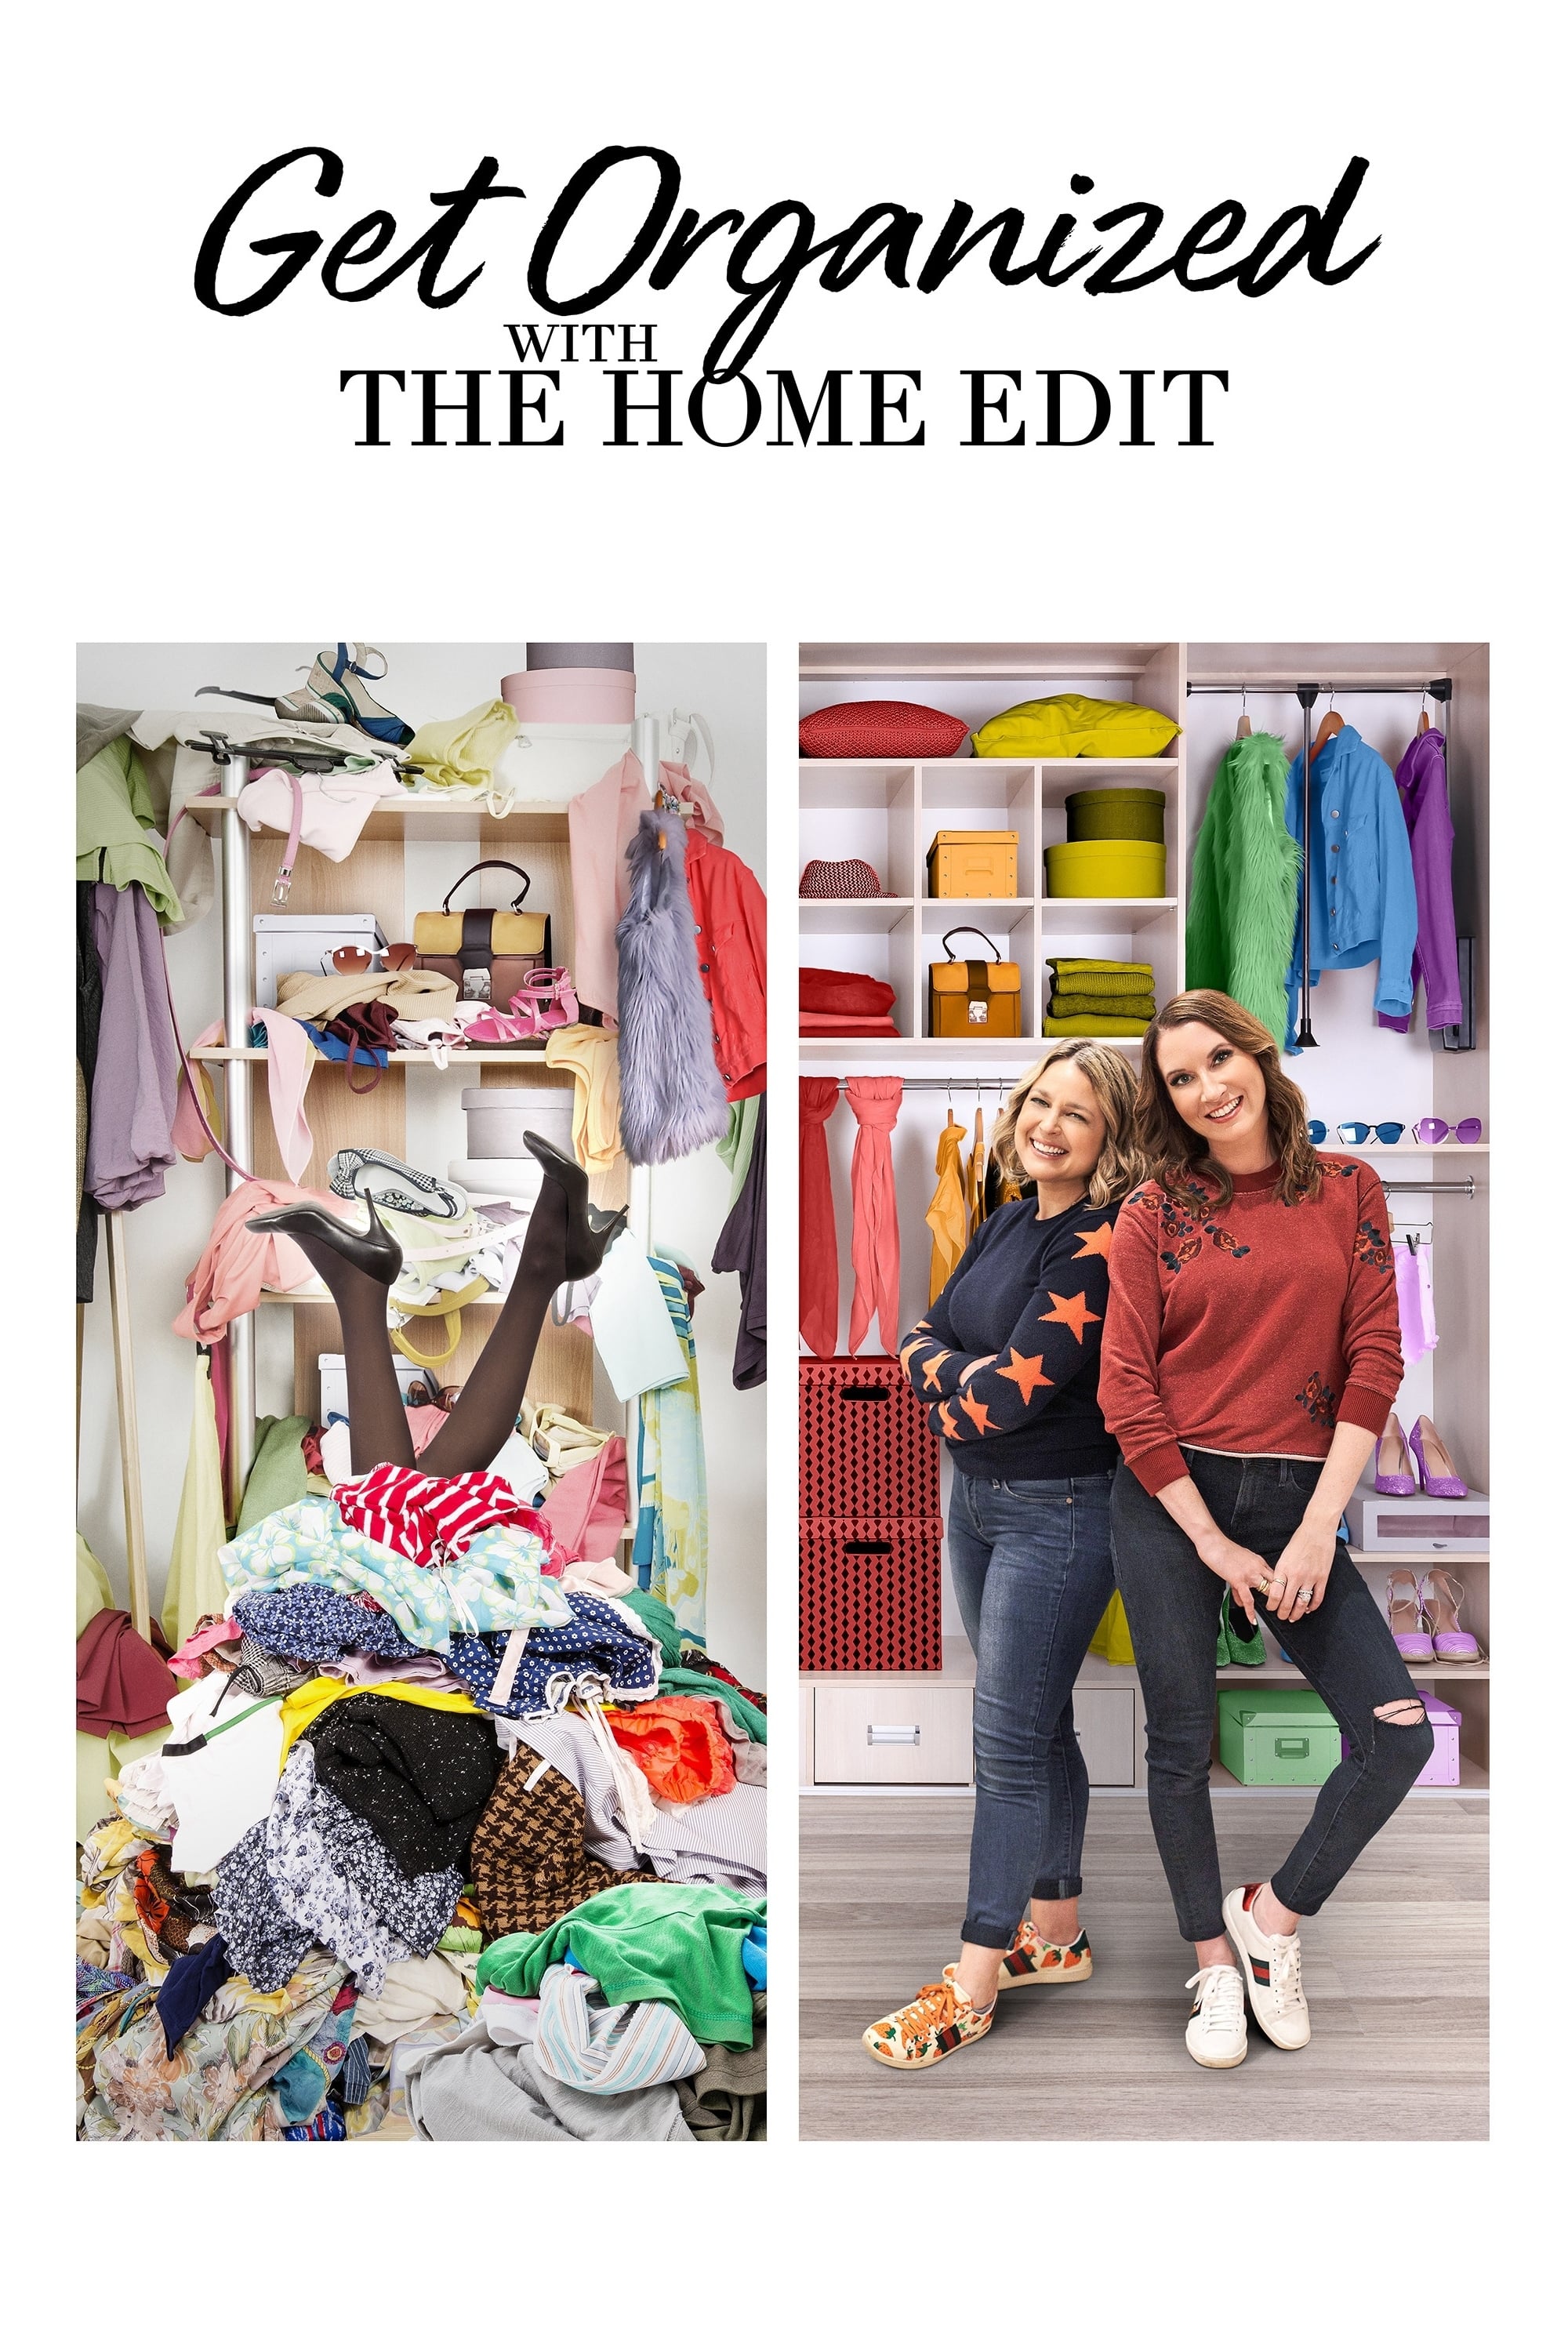 The Home Edit: Cada cosa en su lugar